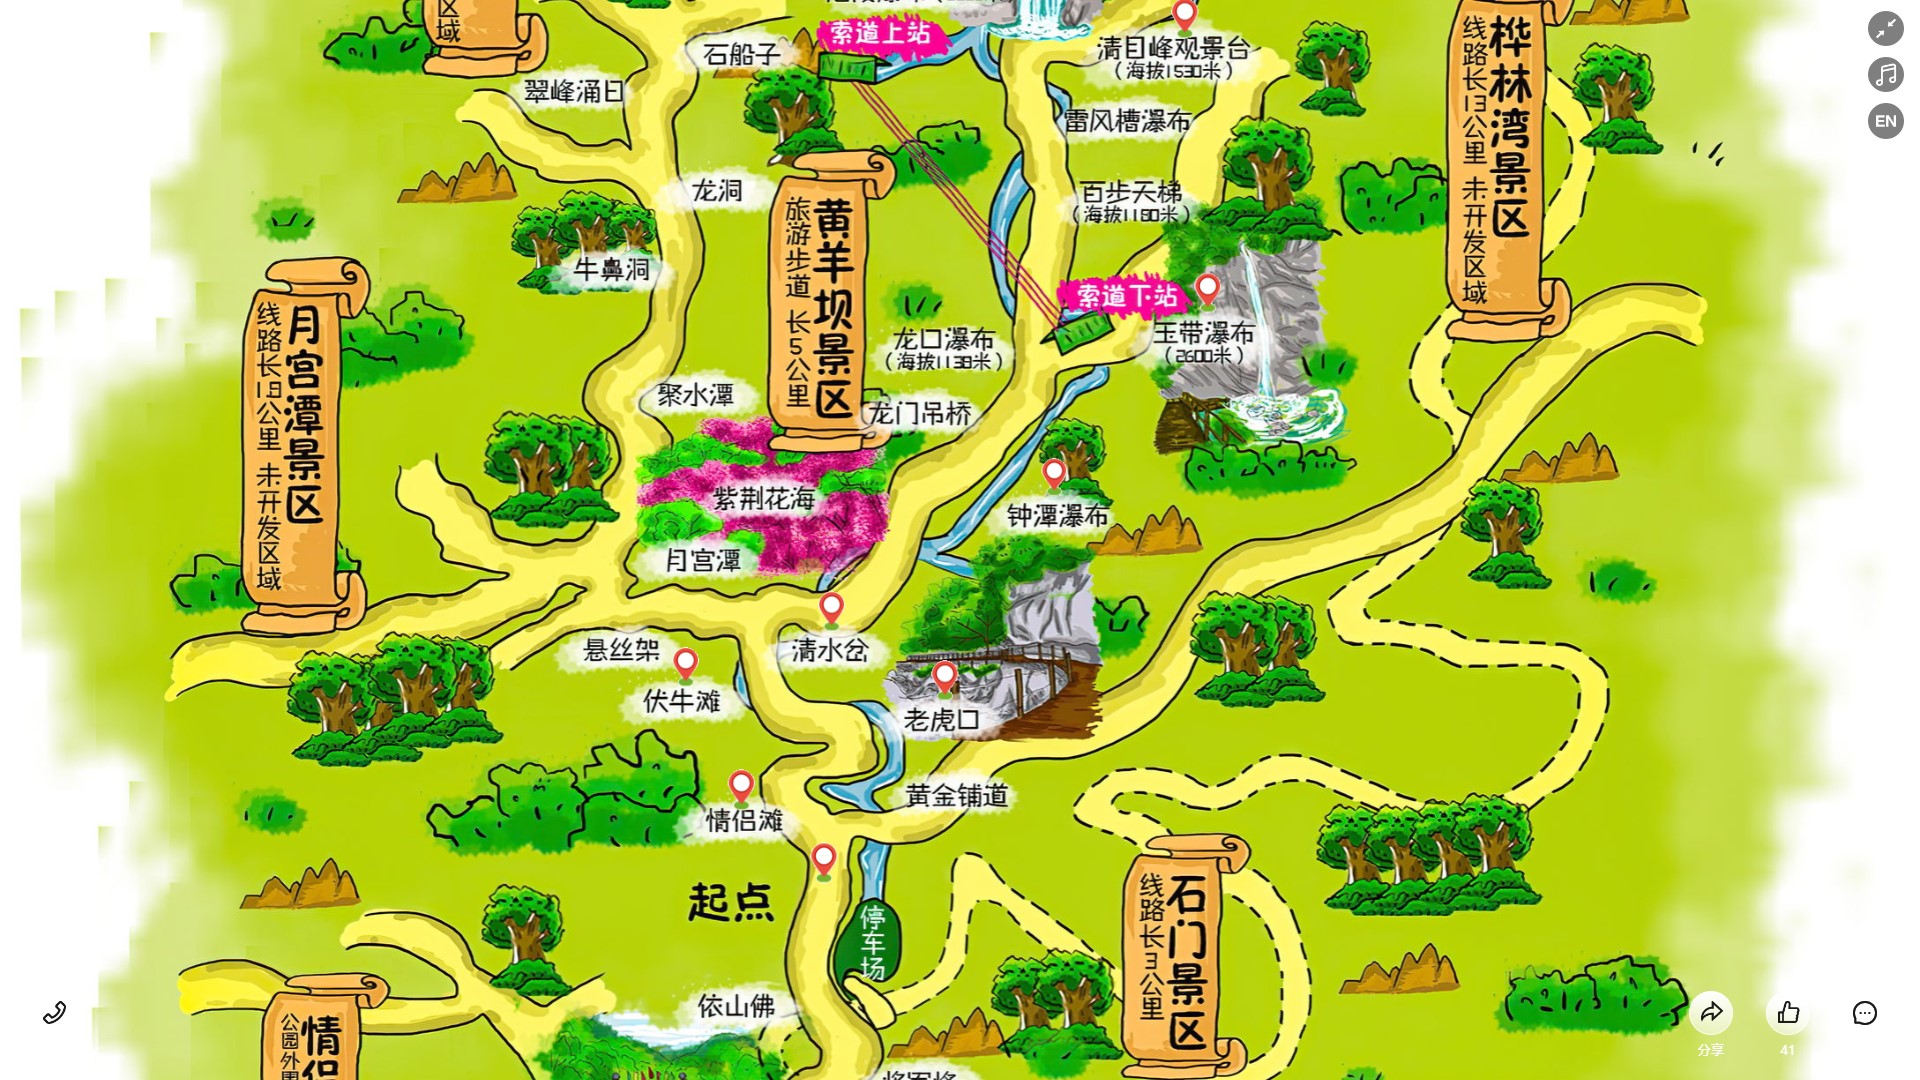 大竹景区导览系统